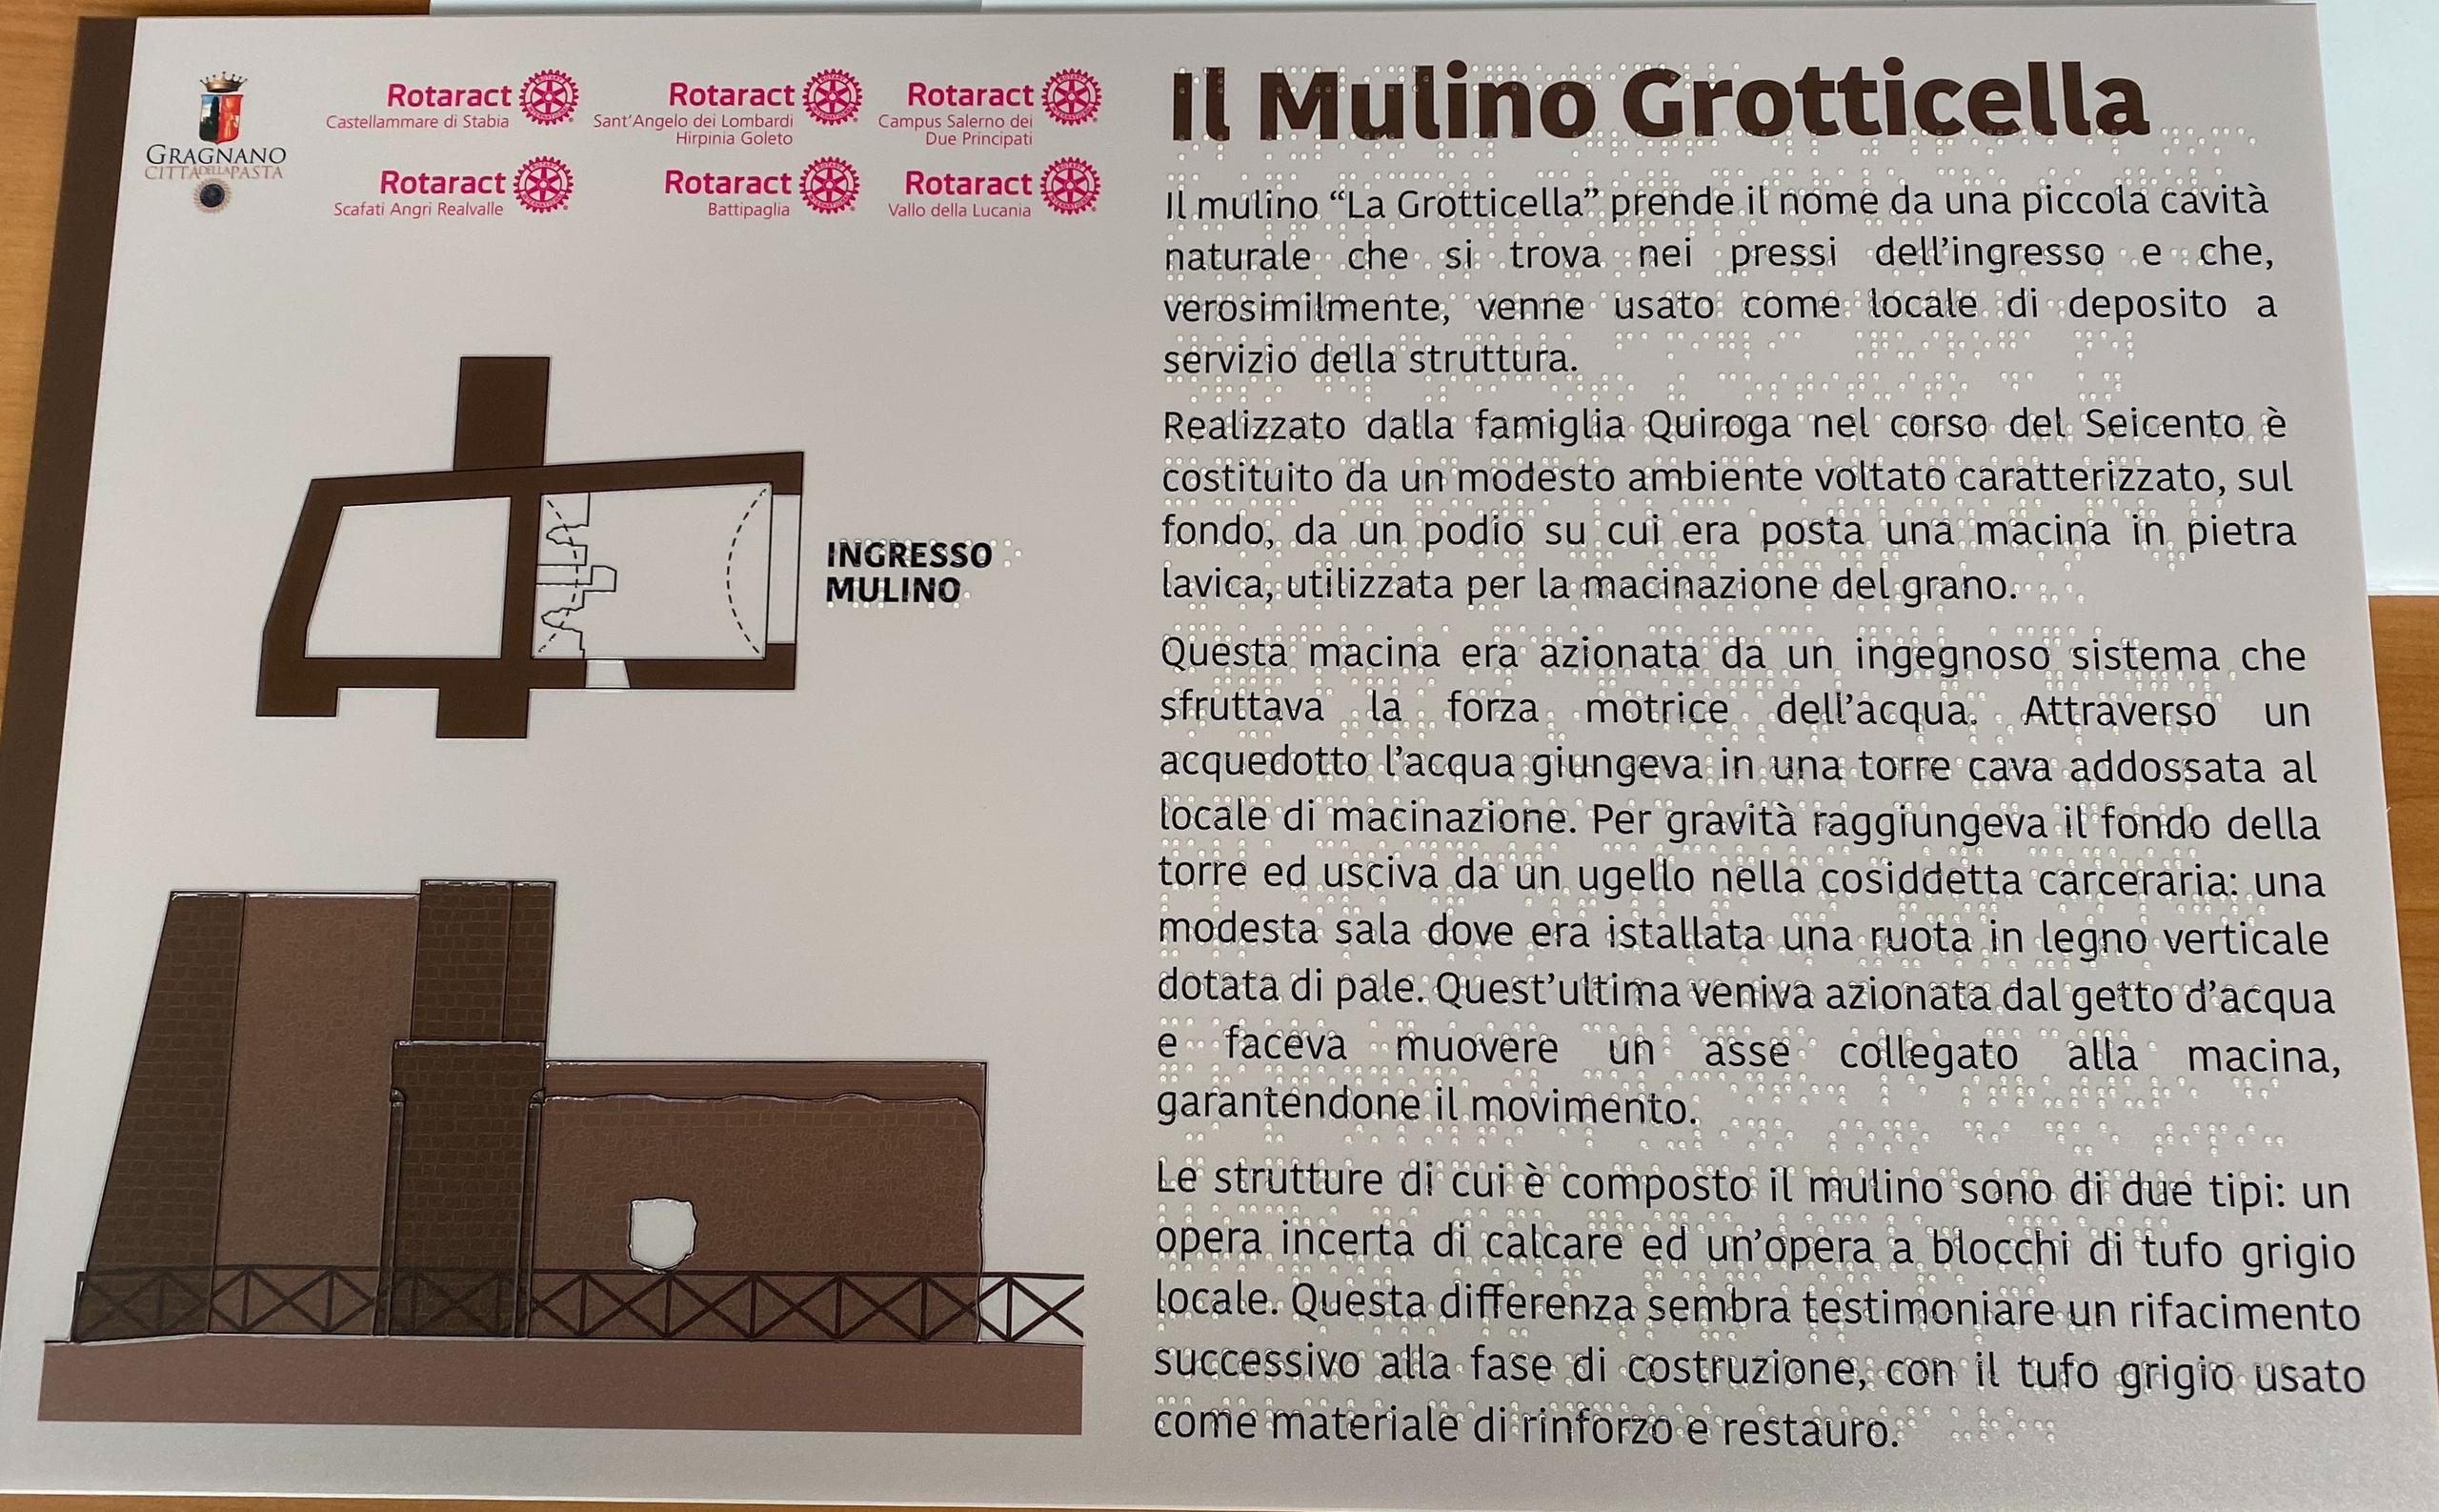 mappa tattile mulino grotticella città di Gragnano